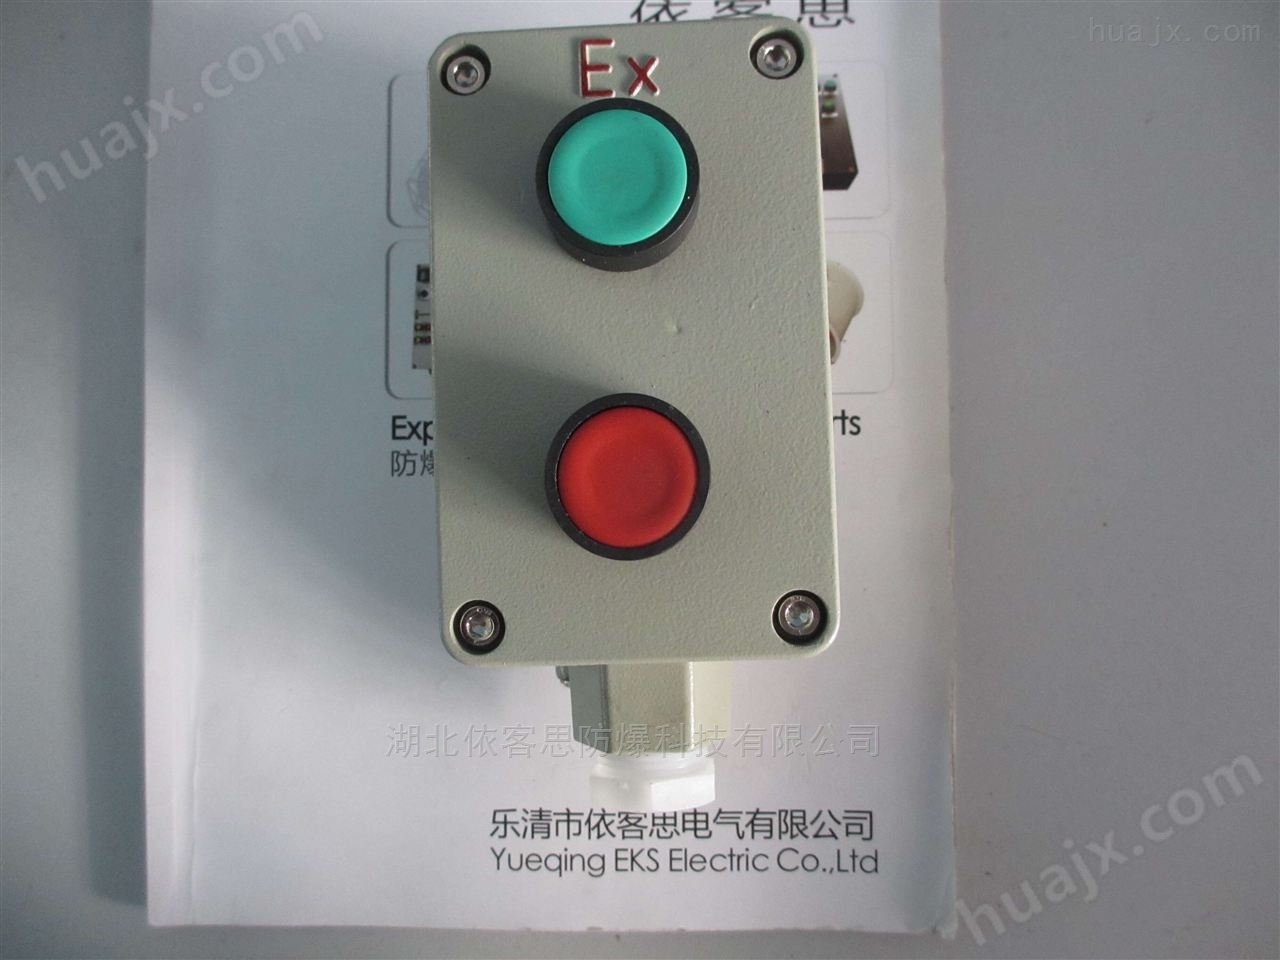 两钮防爆控制按钮盒LA53-2价格